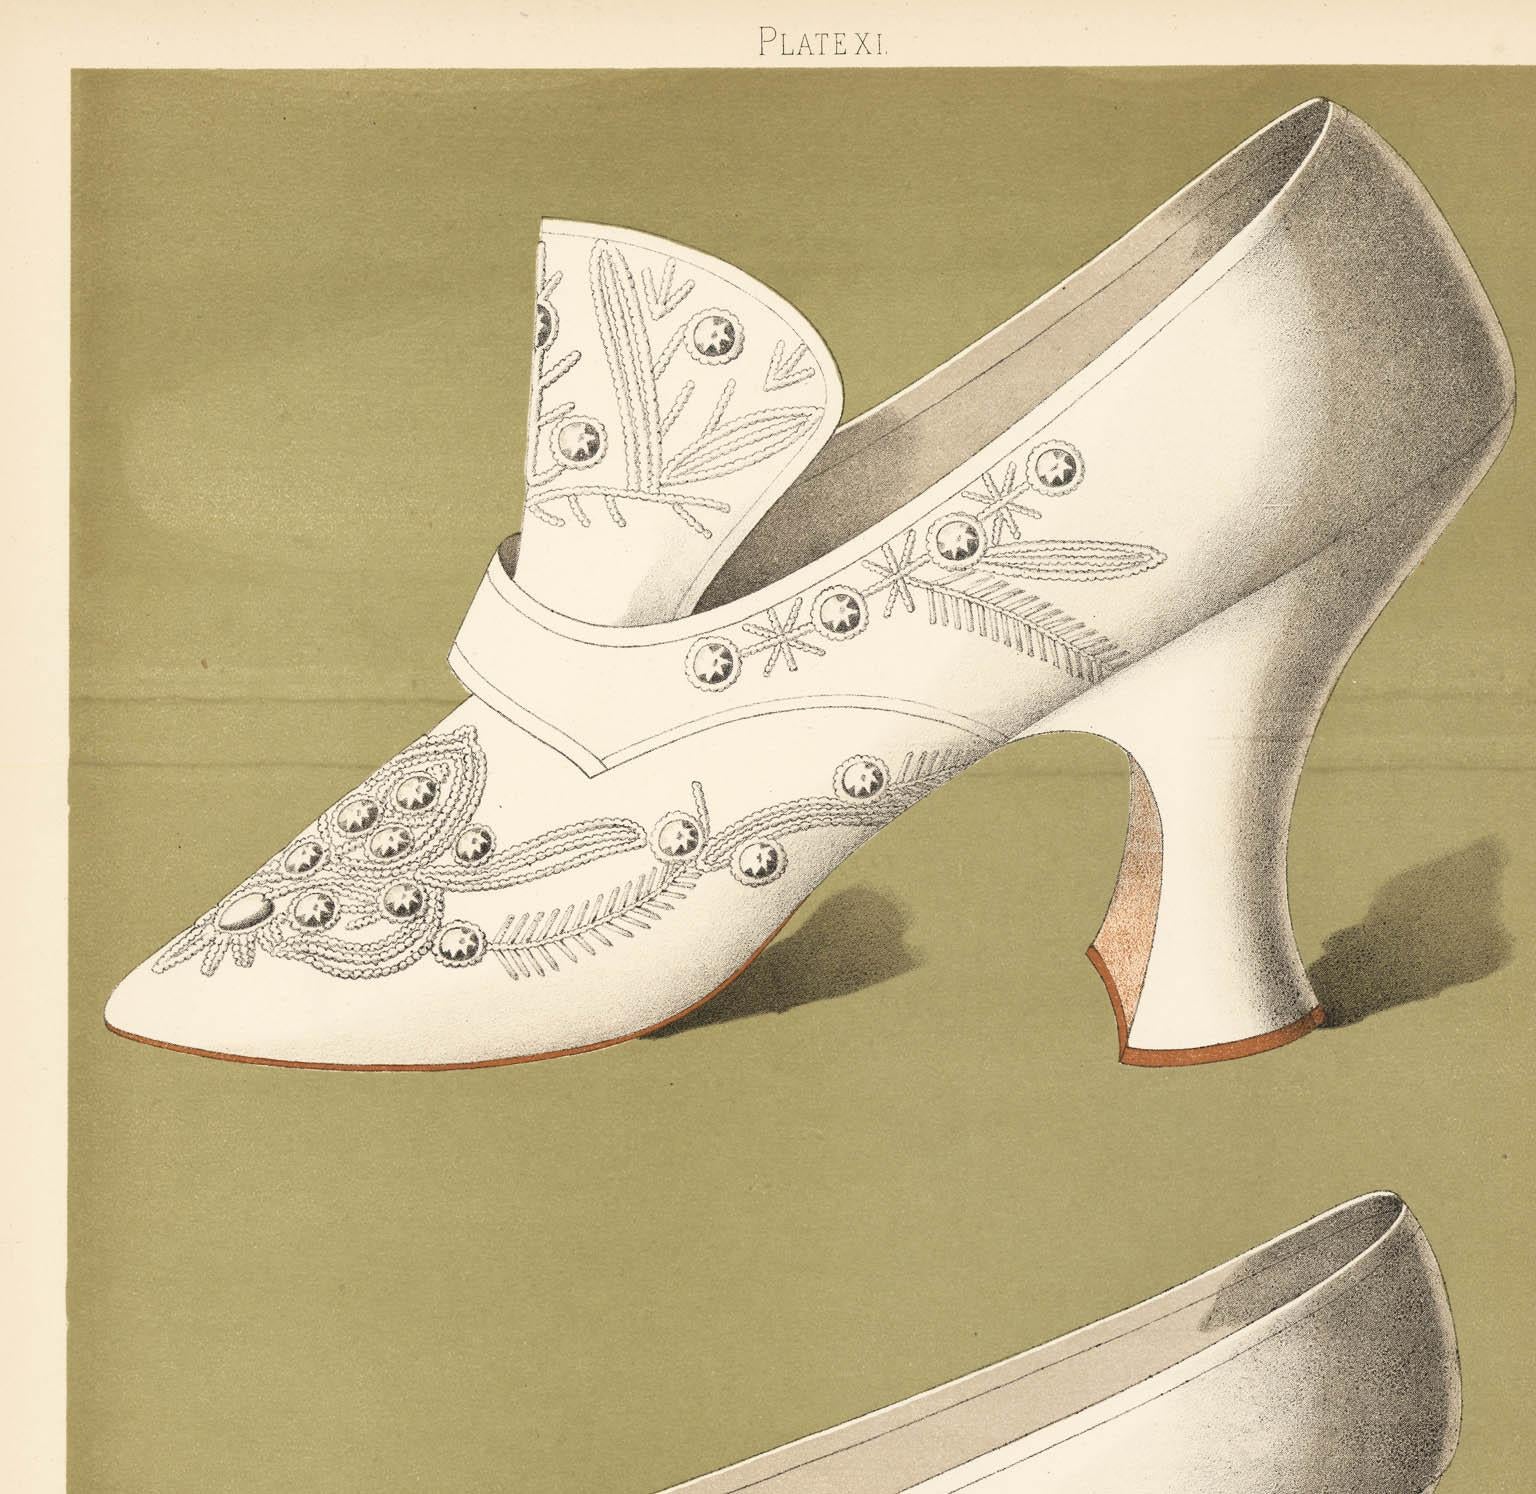 Damen-Kleidschuhe. Servierplatte XI. – Print von T. Watson Greig